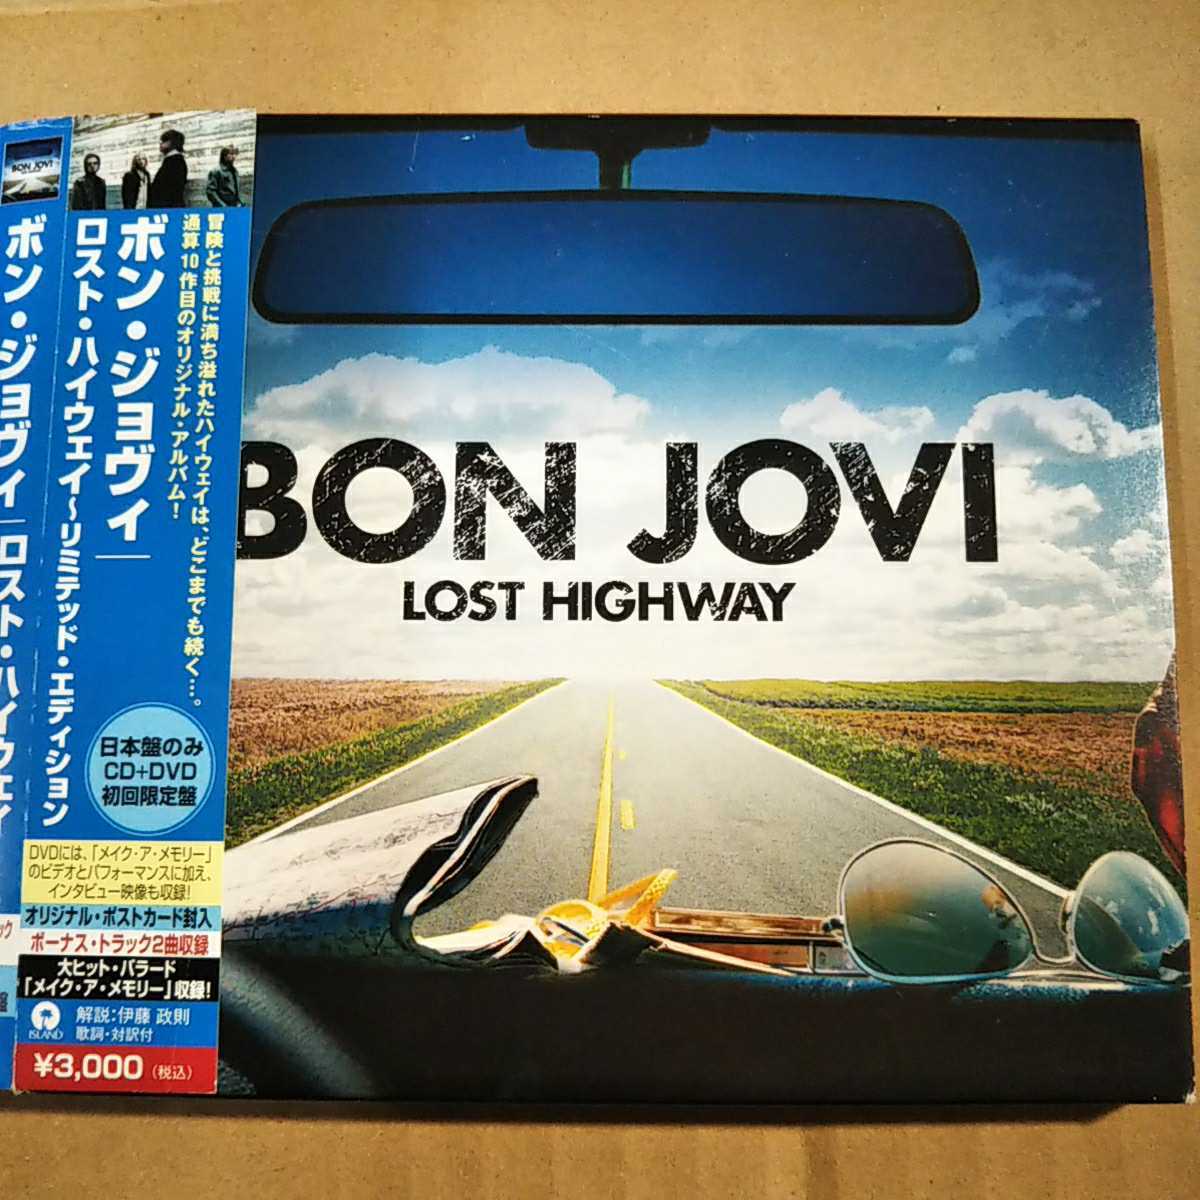 中古CD BON JOVI / ボン・ジョヴィ『LOST HIGHWAY』国内盤/帯有り/紙ケース/2枚組 UICL-9041【1440】